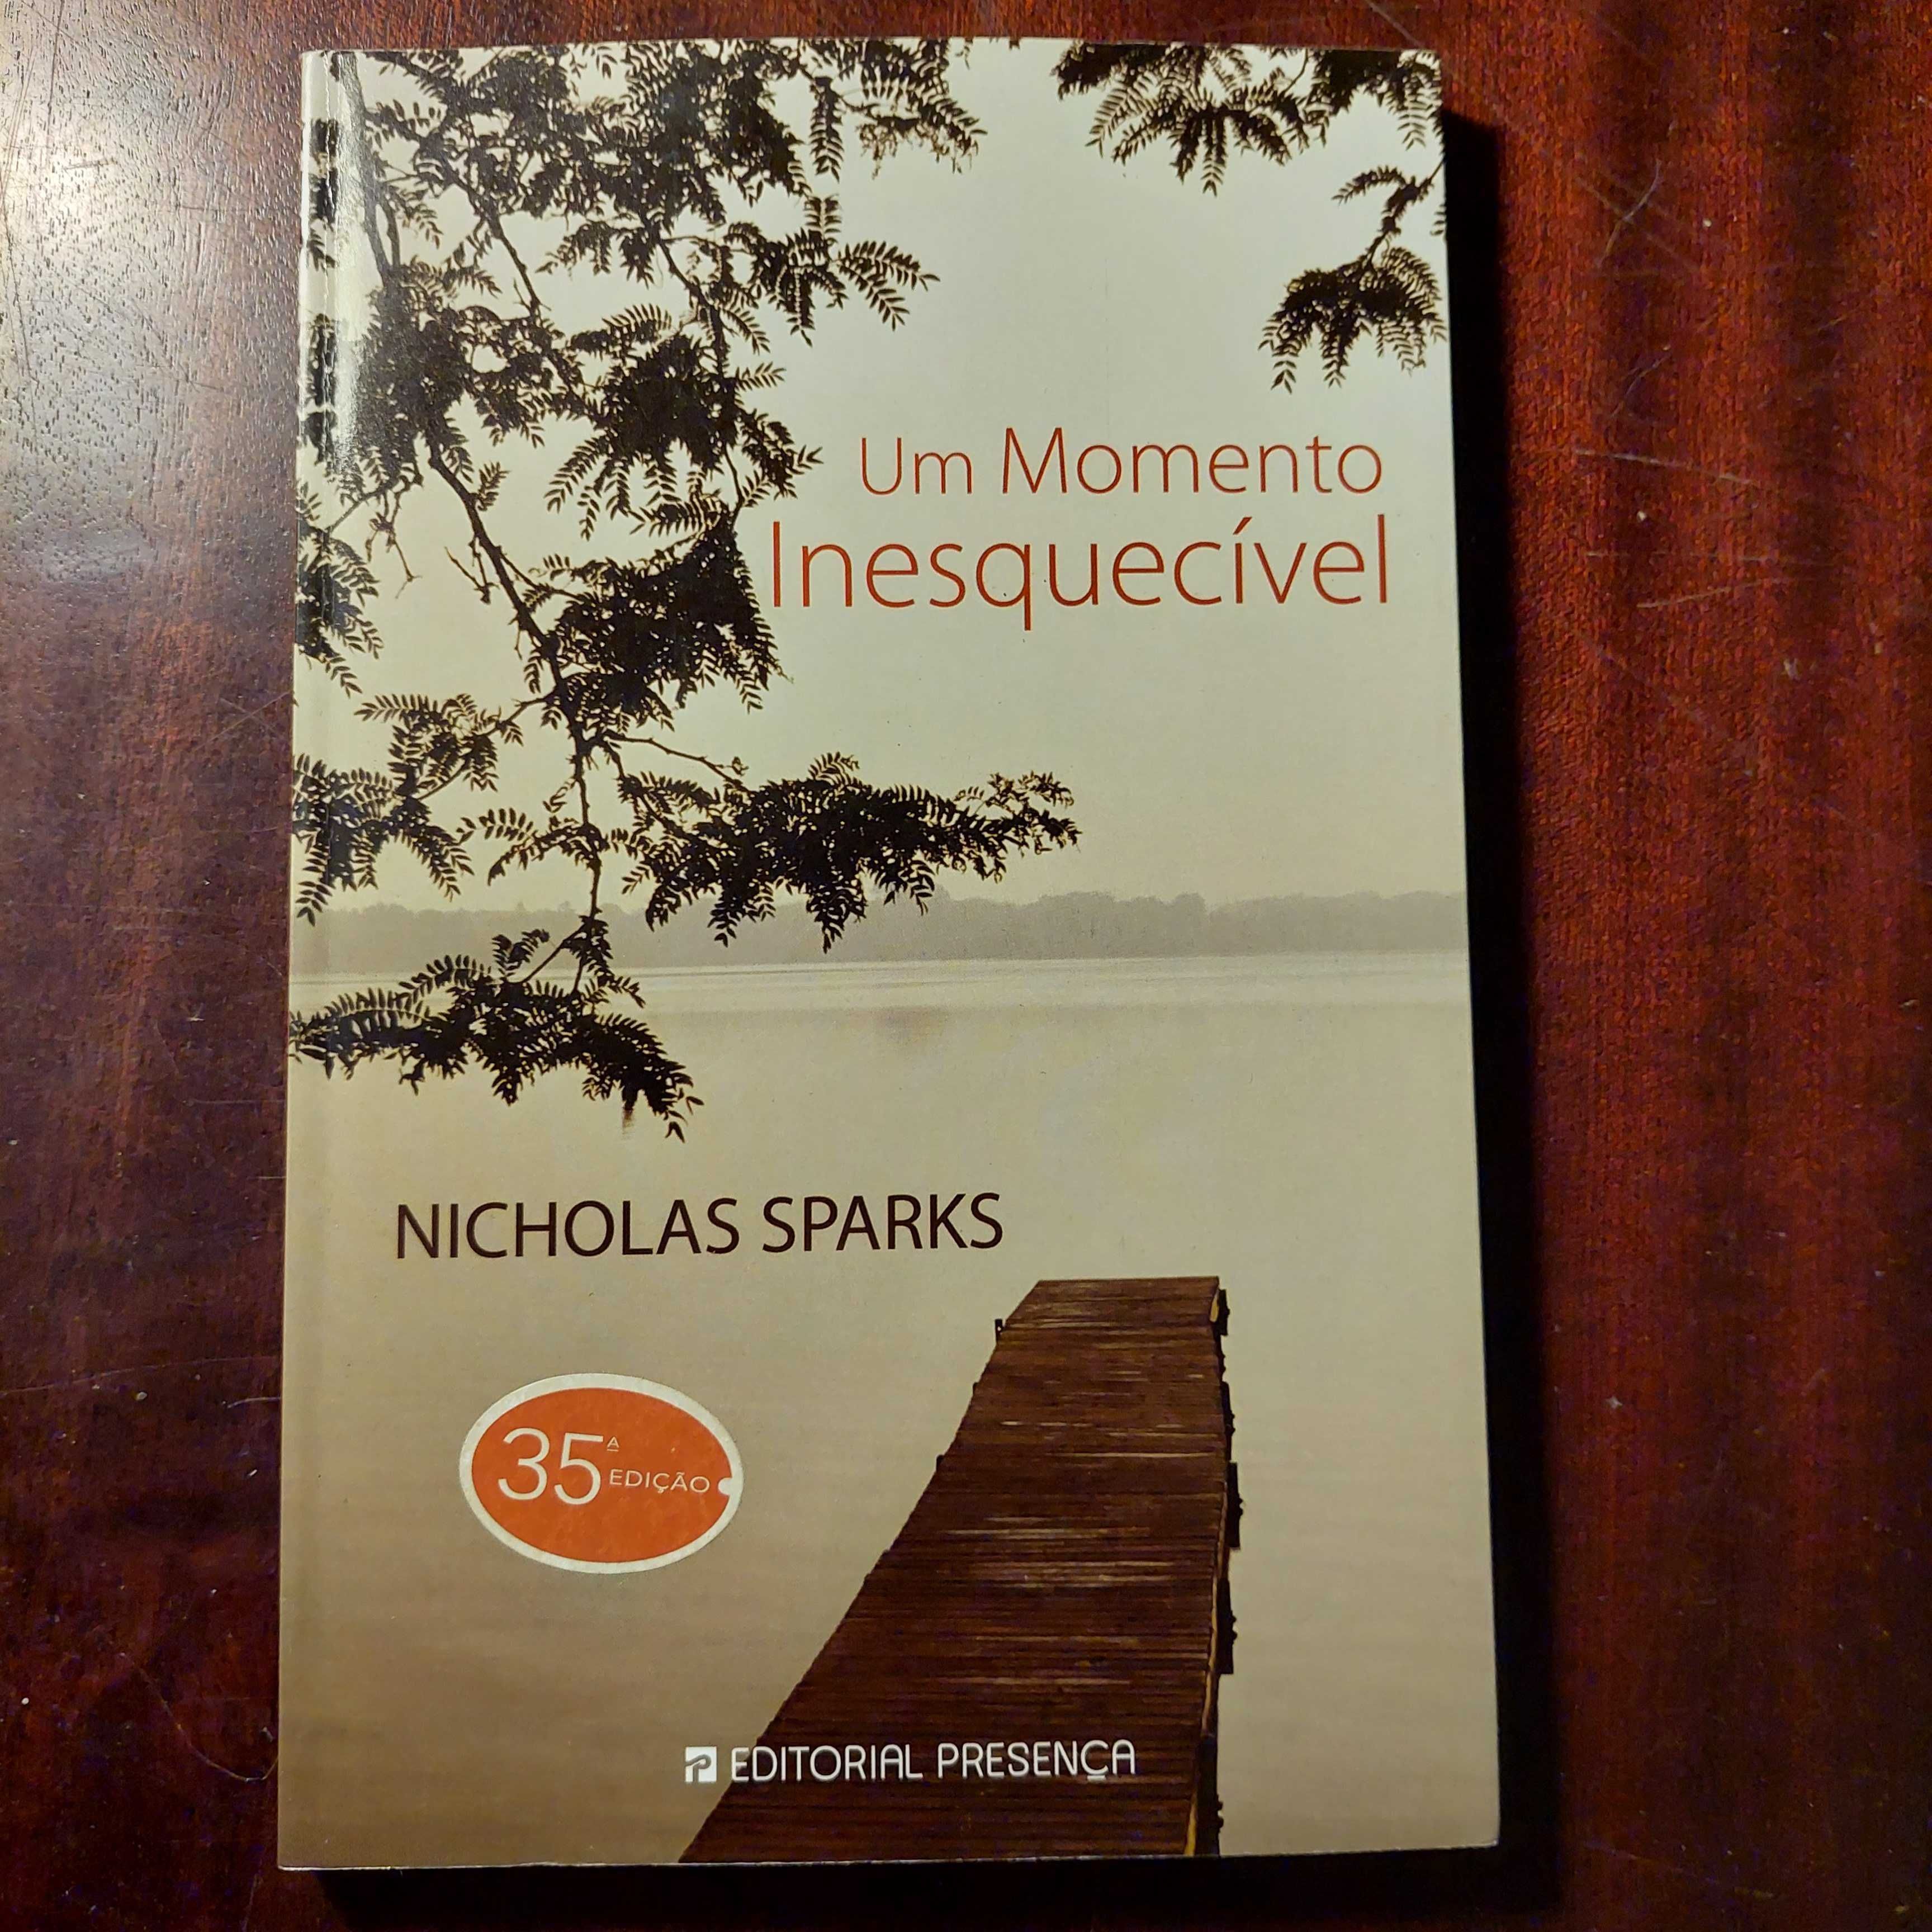 Nicholas Sparks - Um Momento Inesquecível